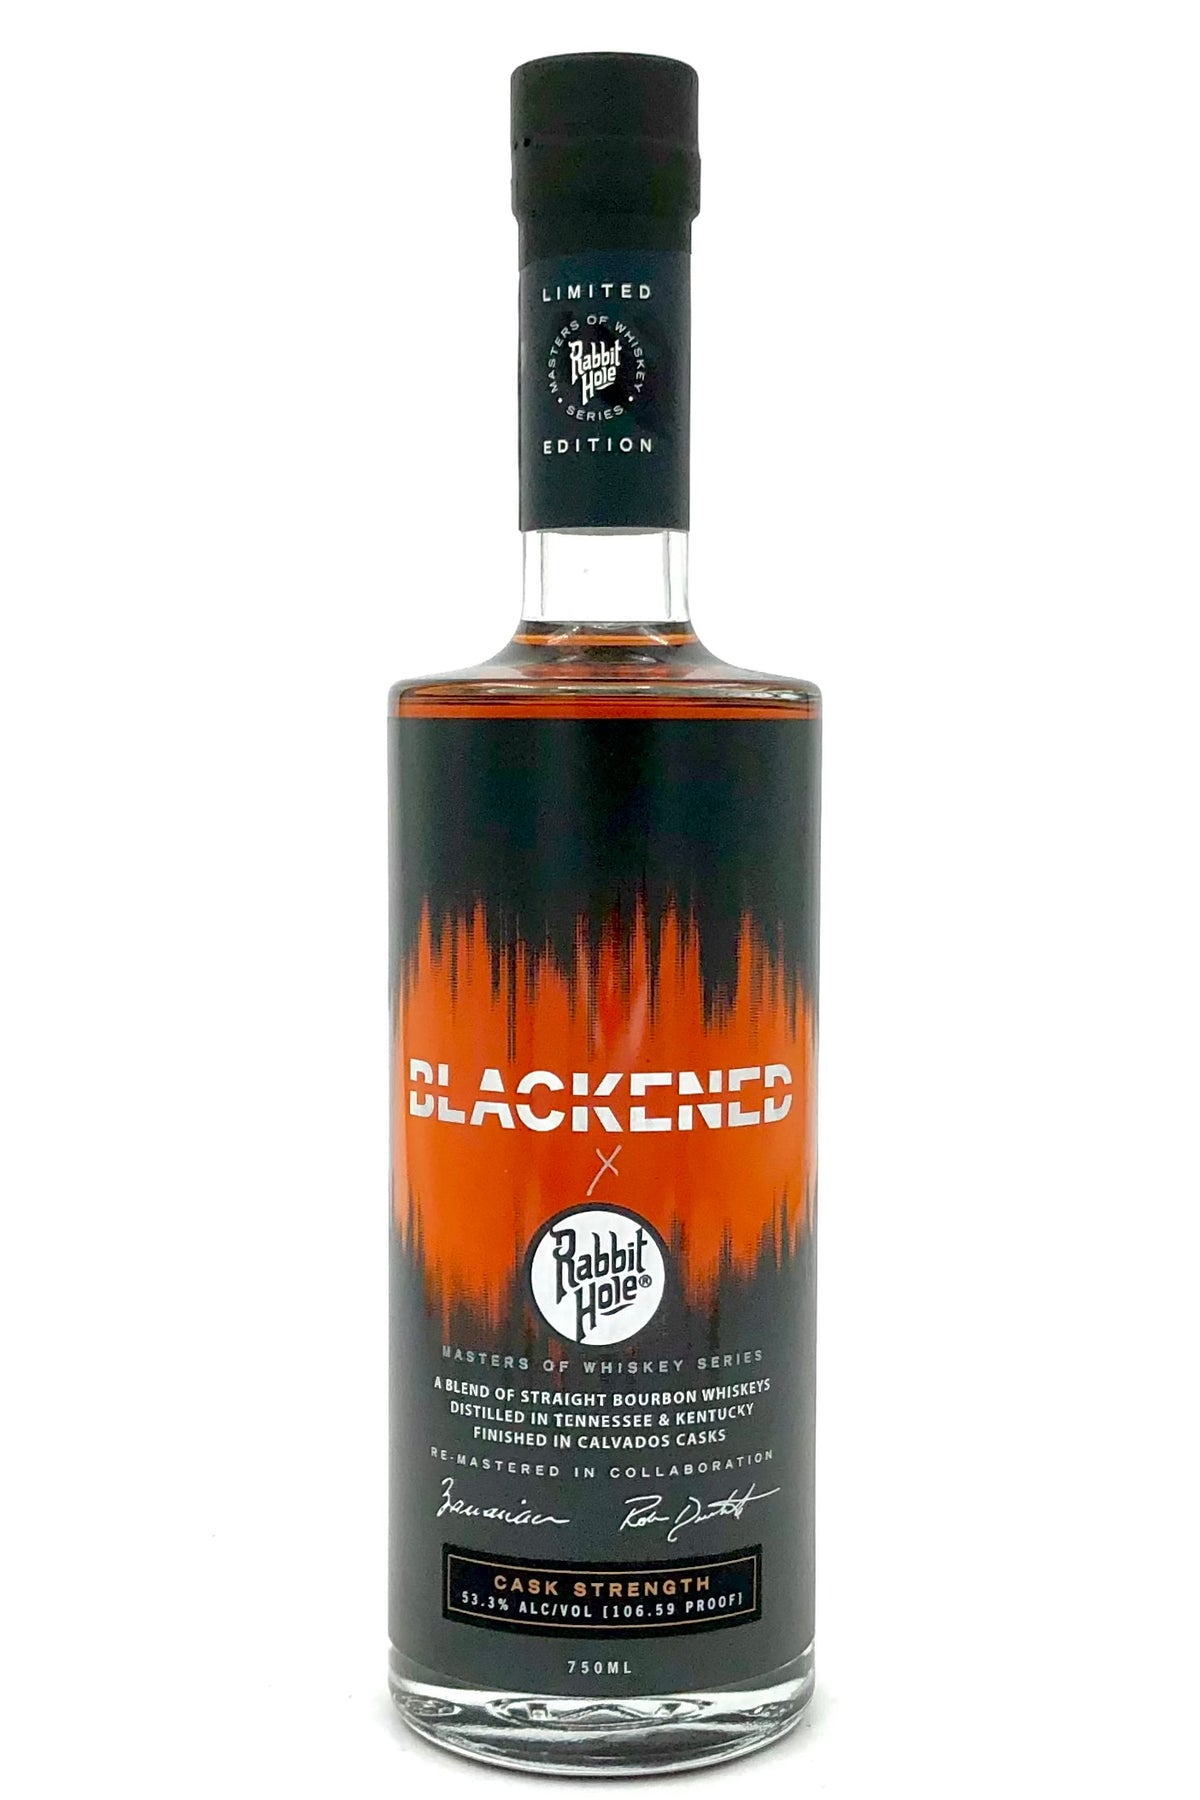 Blackened X Rabbit Hole Master of Whiskey Series Bourbon Whiskey